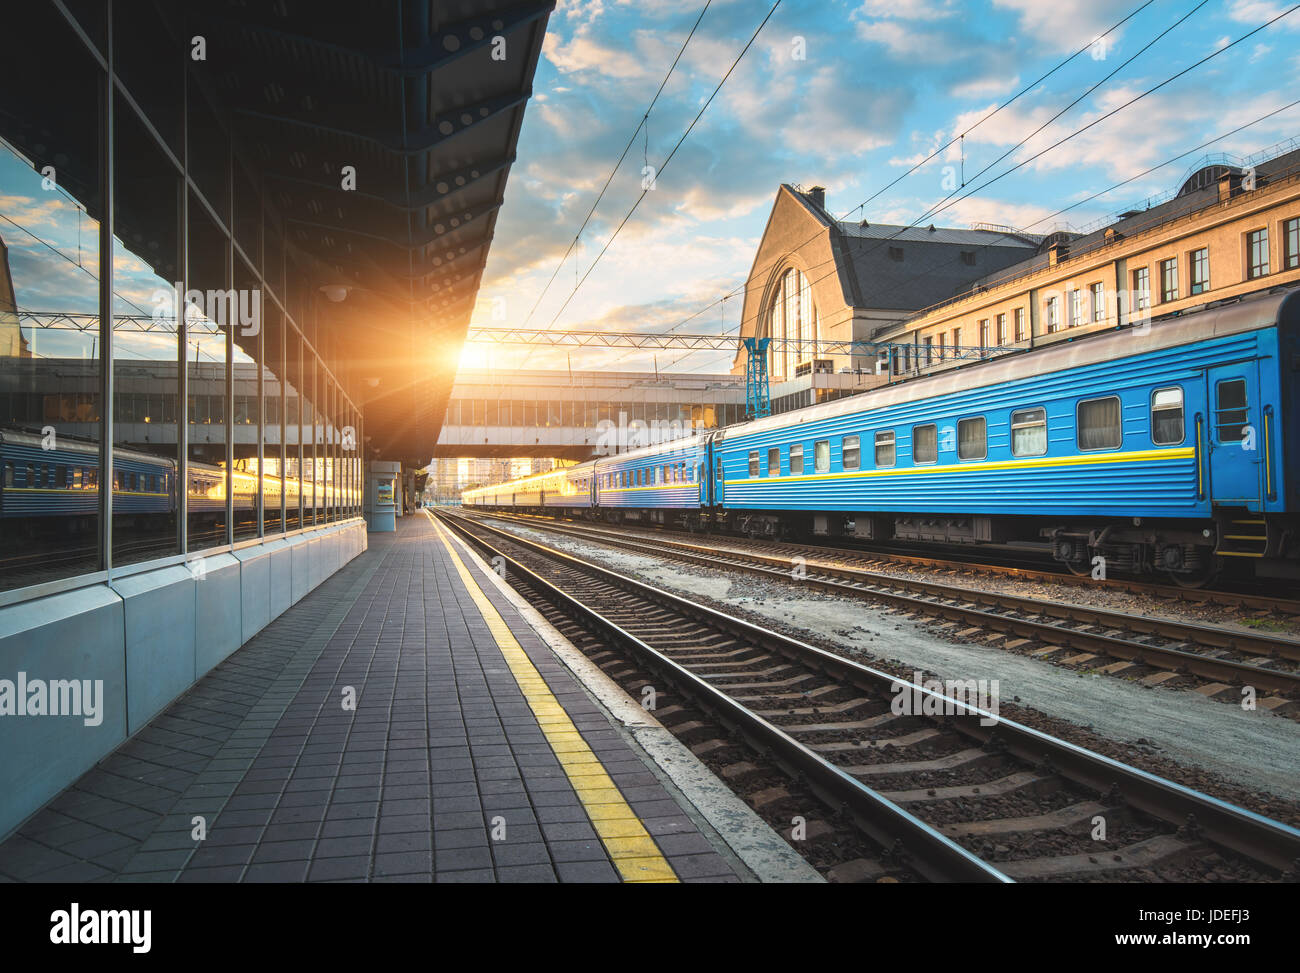 Bella blu treni passeggeri presso la stazione ferroviaria al tramonto. Vista industriale con il moderno treno, ferrovia, piattaforma ferroviaria, edifici e cielo blu Foto Stock